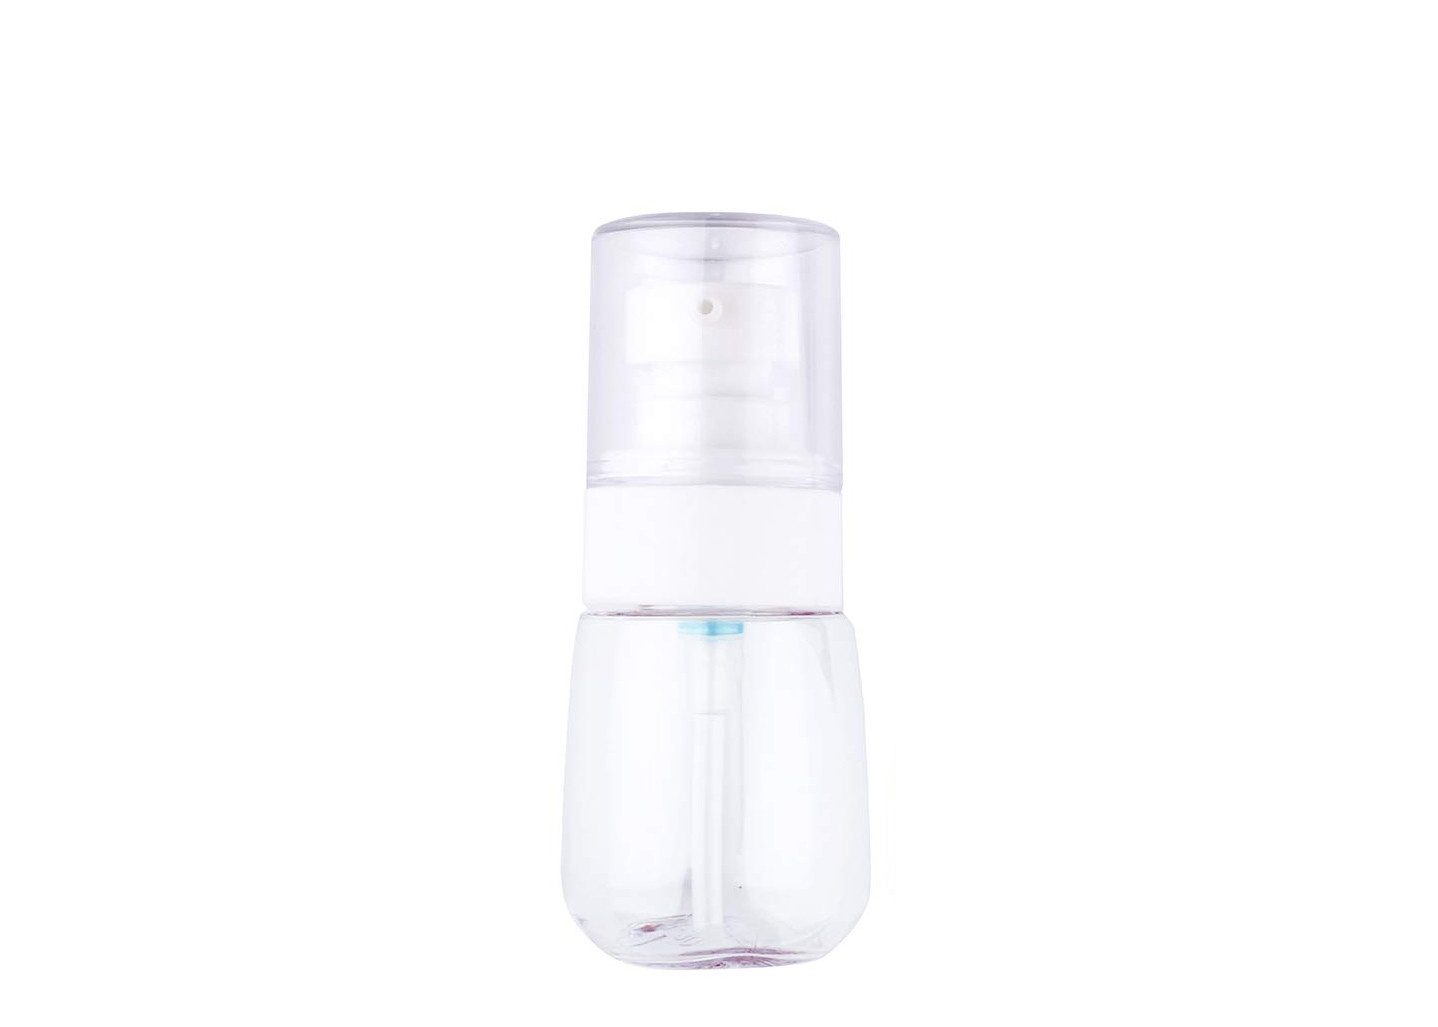 Glatte Oberflächenflasche BPA der kosmetik-PETG geben Plastiklotions-Behälter frei